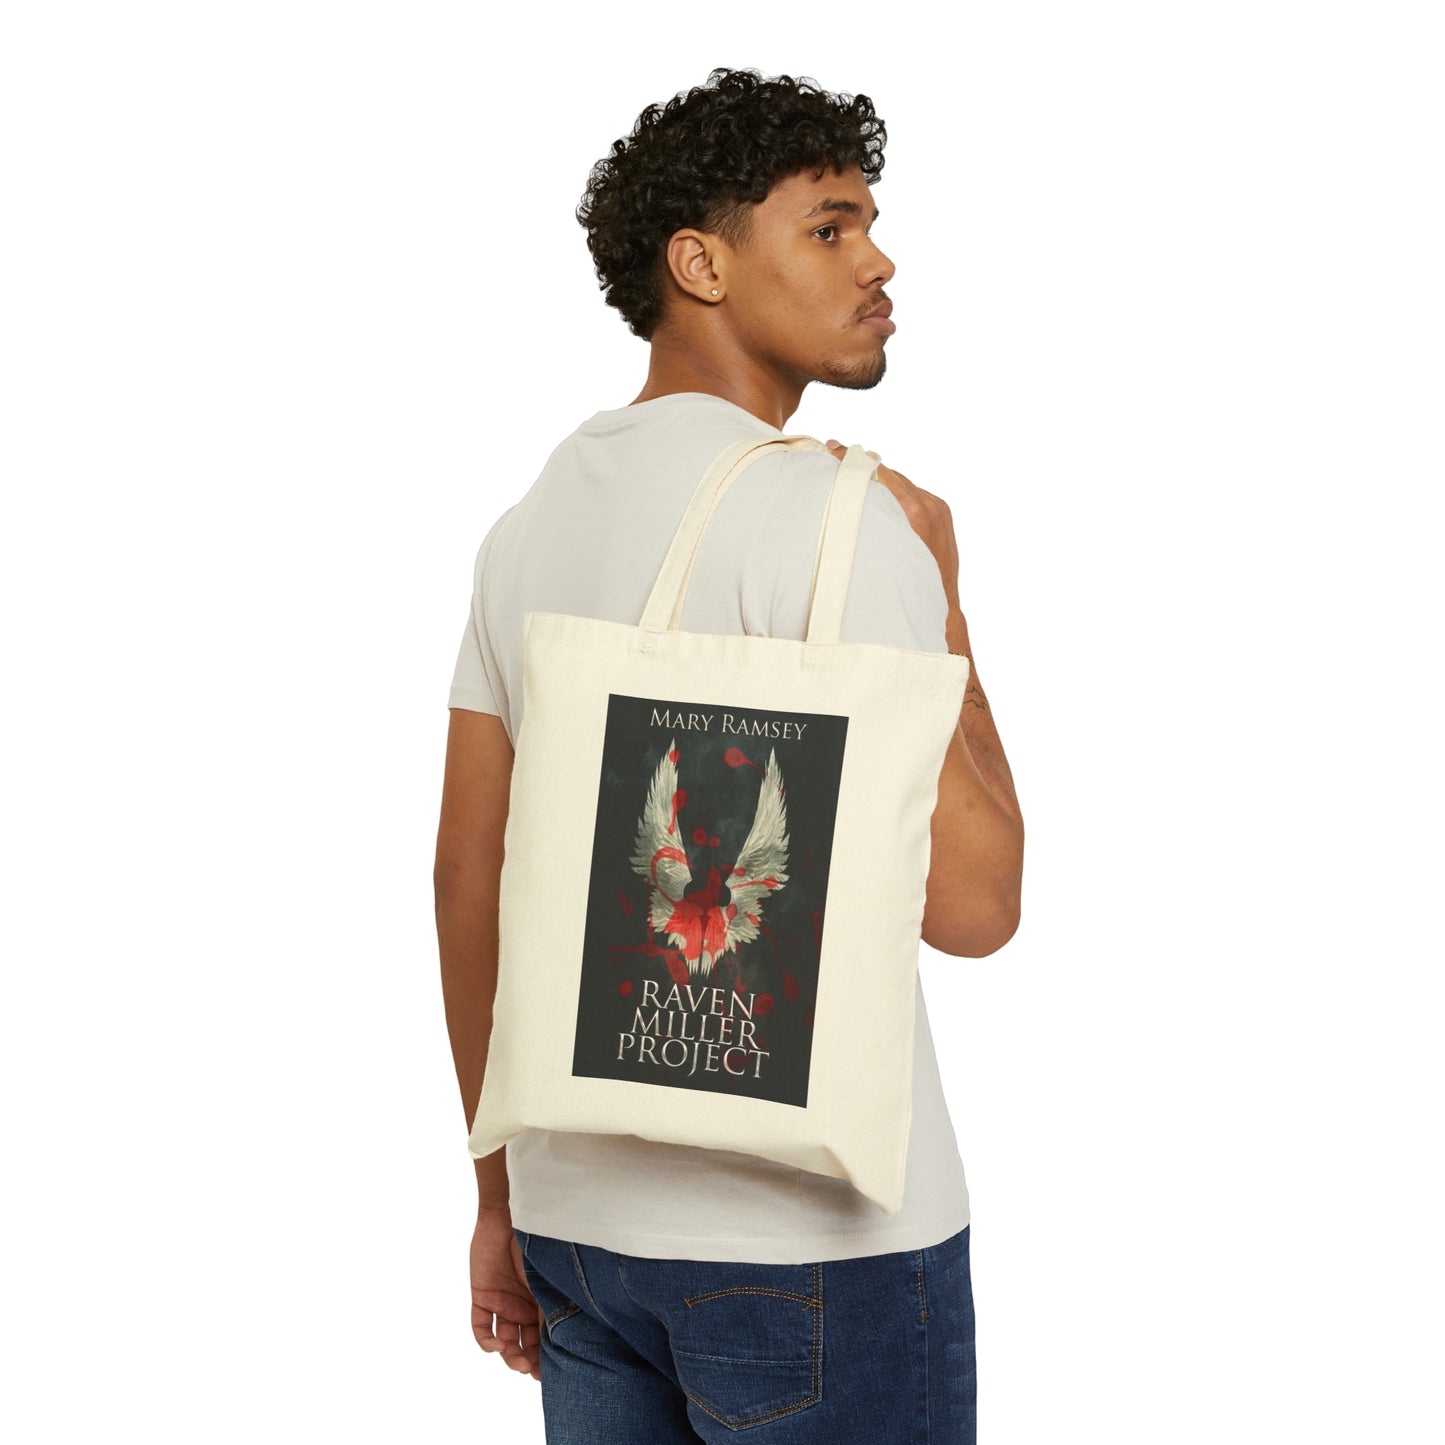 Raven Miller Project - Cotton Canvas Tote Bag